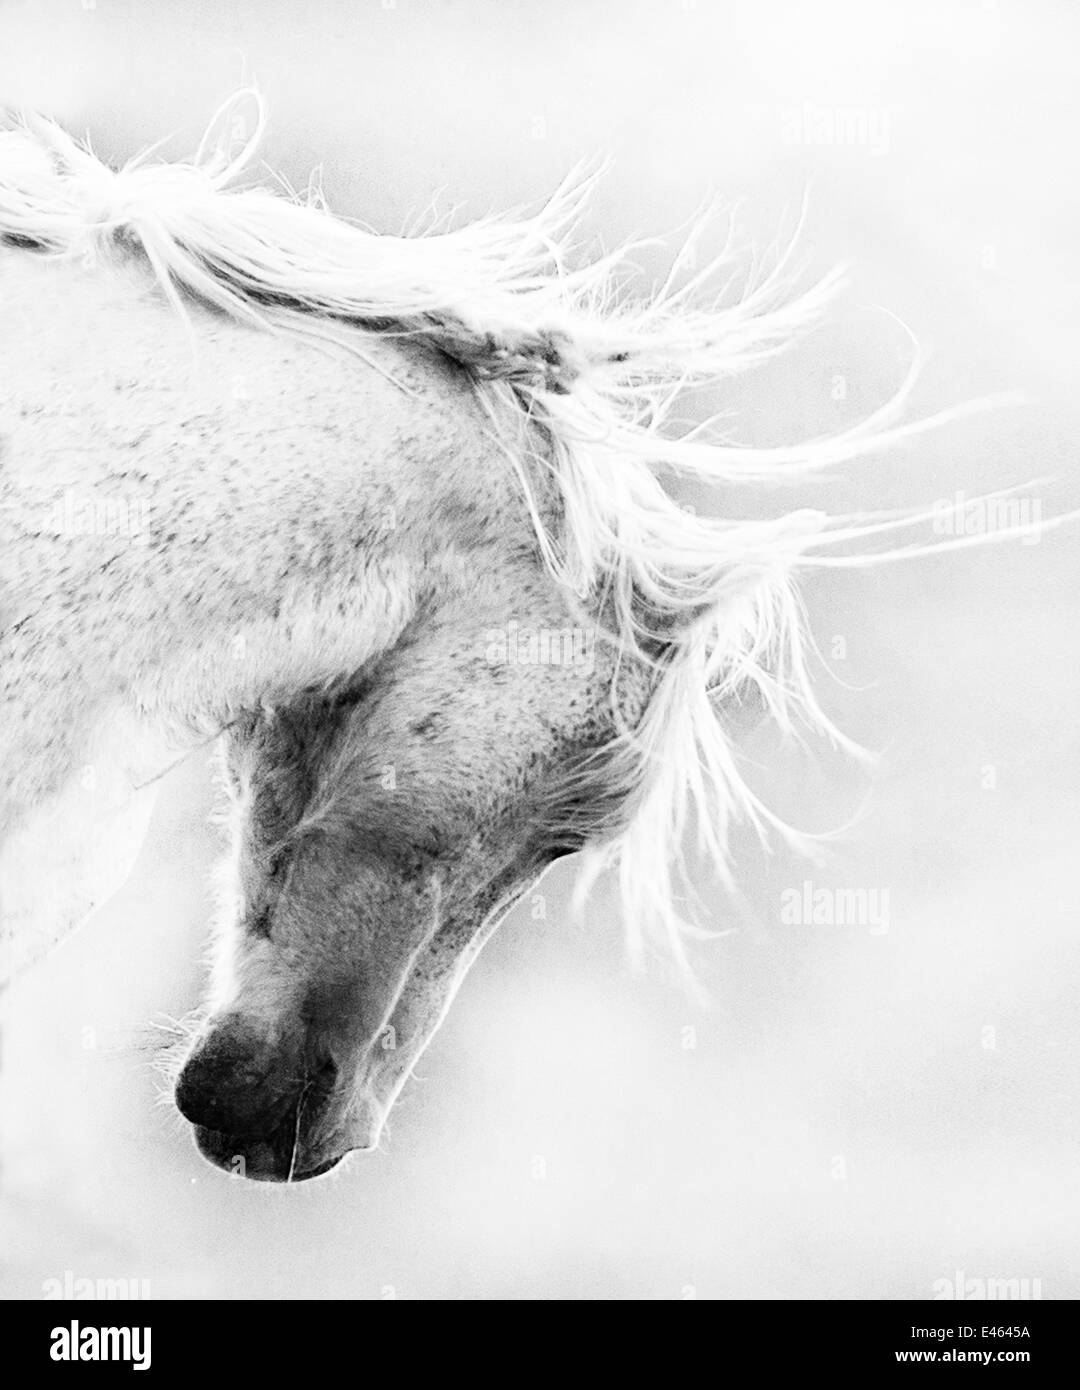 Wild Horse / Mustang schüttelt Kopf und Mähne, Adobe Stadtgebiet Herde, Südwesten Wyoming, USA, Gewinner des wilden Pferd Abschnitt, EQUINE ideale PHOTOGRAPHY CONTEST 2012 Stockfoto